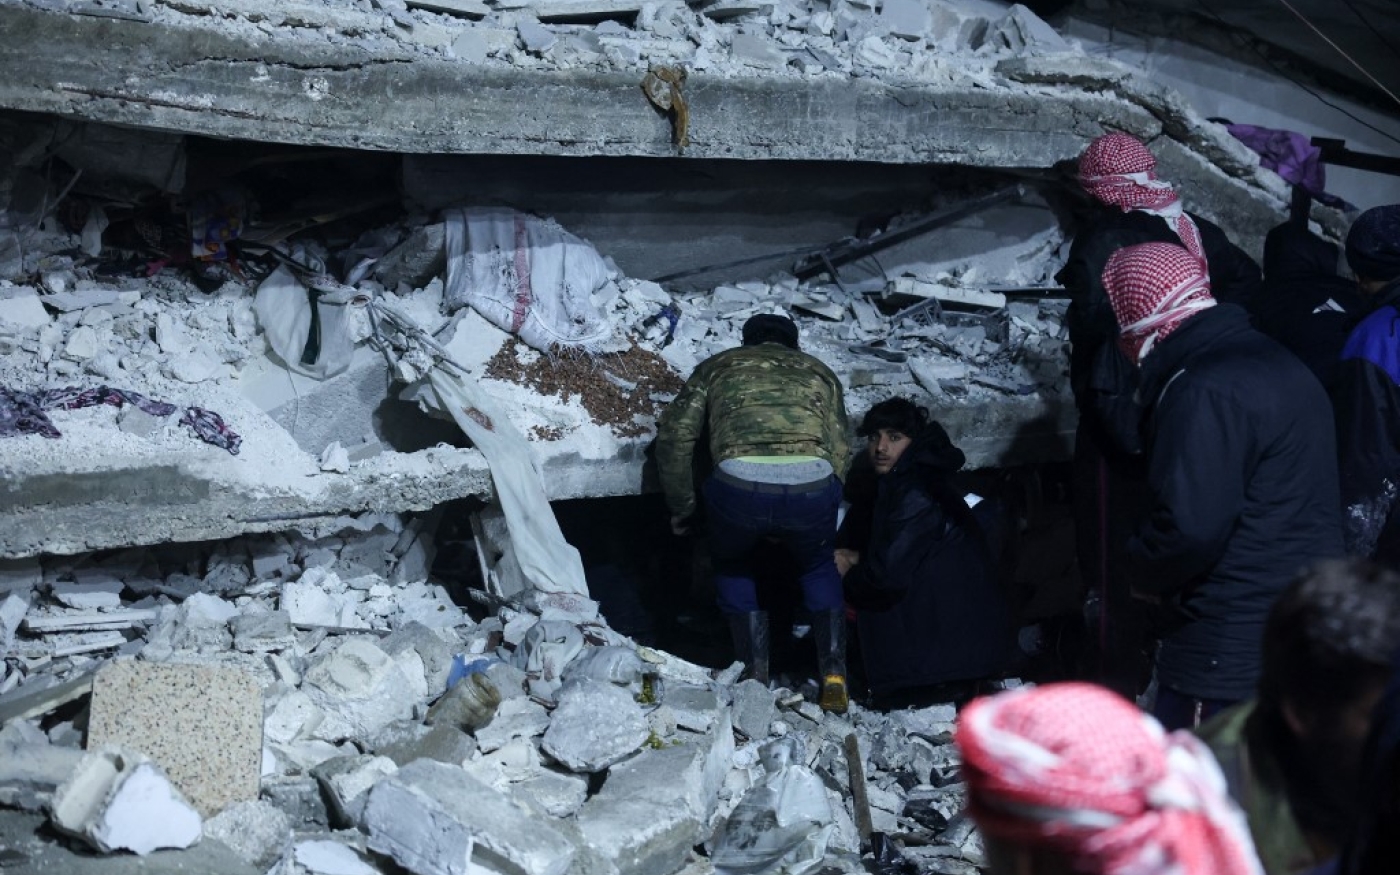 Des habitants recherchent des survivants parmi les décombres des immeubles effondrés, à Azmarin, au nord de la Syrie, près de la frontière avec la Turquie, le 6 février 2023 (AFP/Omar Haj Kadour)